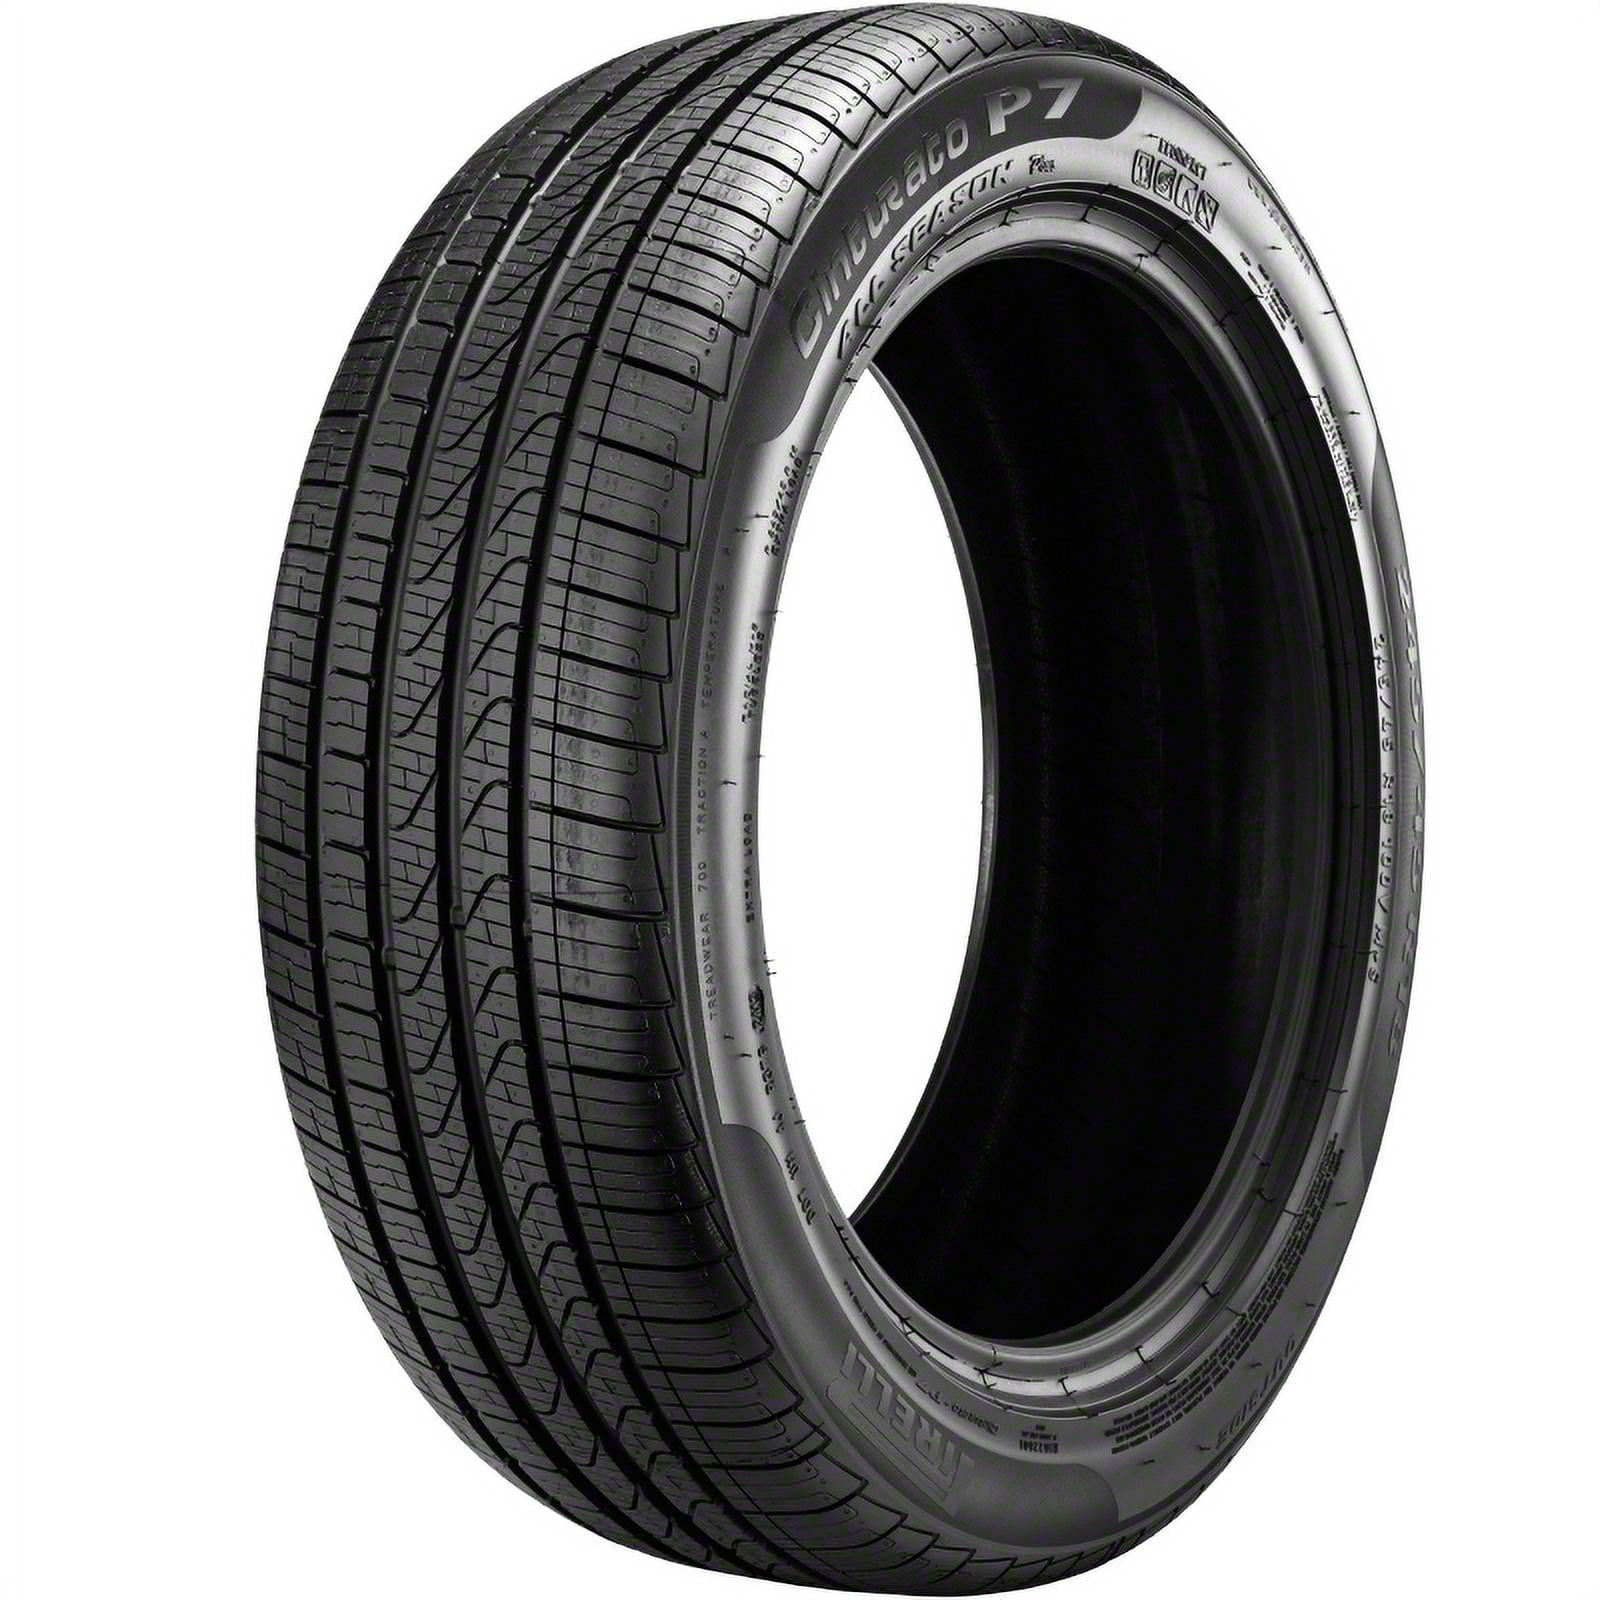 Pirelli Cinturato P7 All Season Plus 215/55R16 97 H Tire